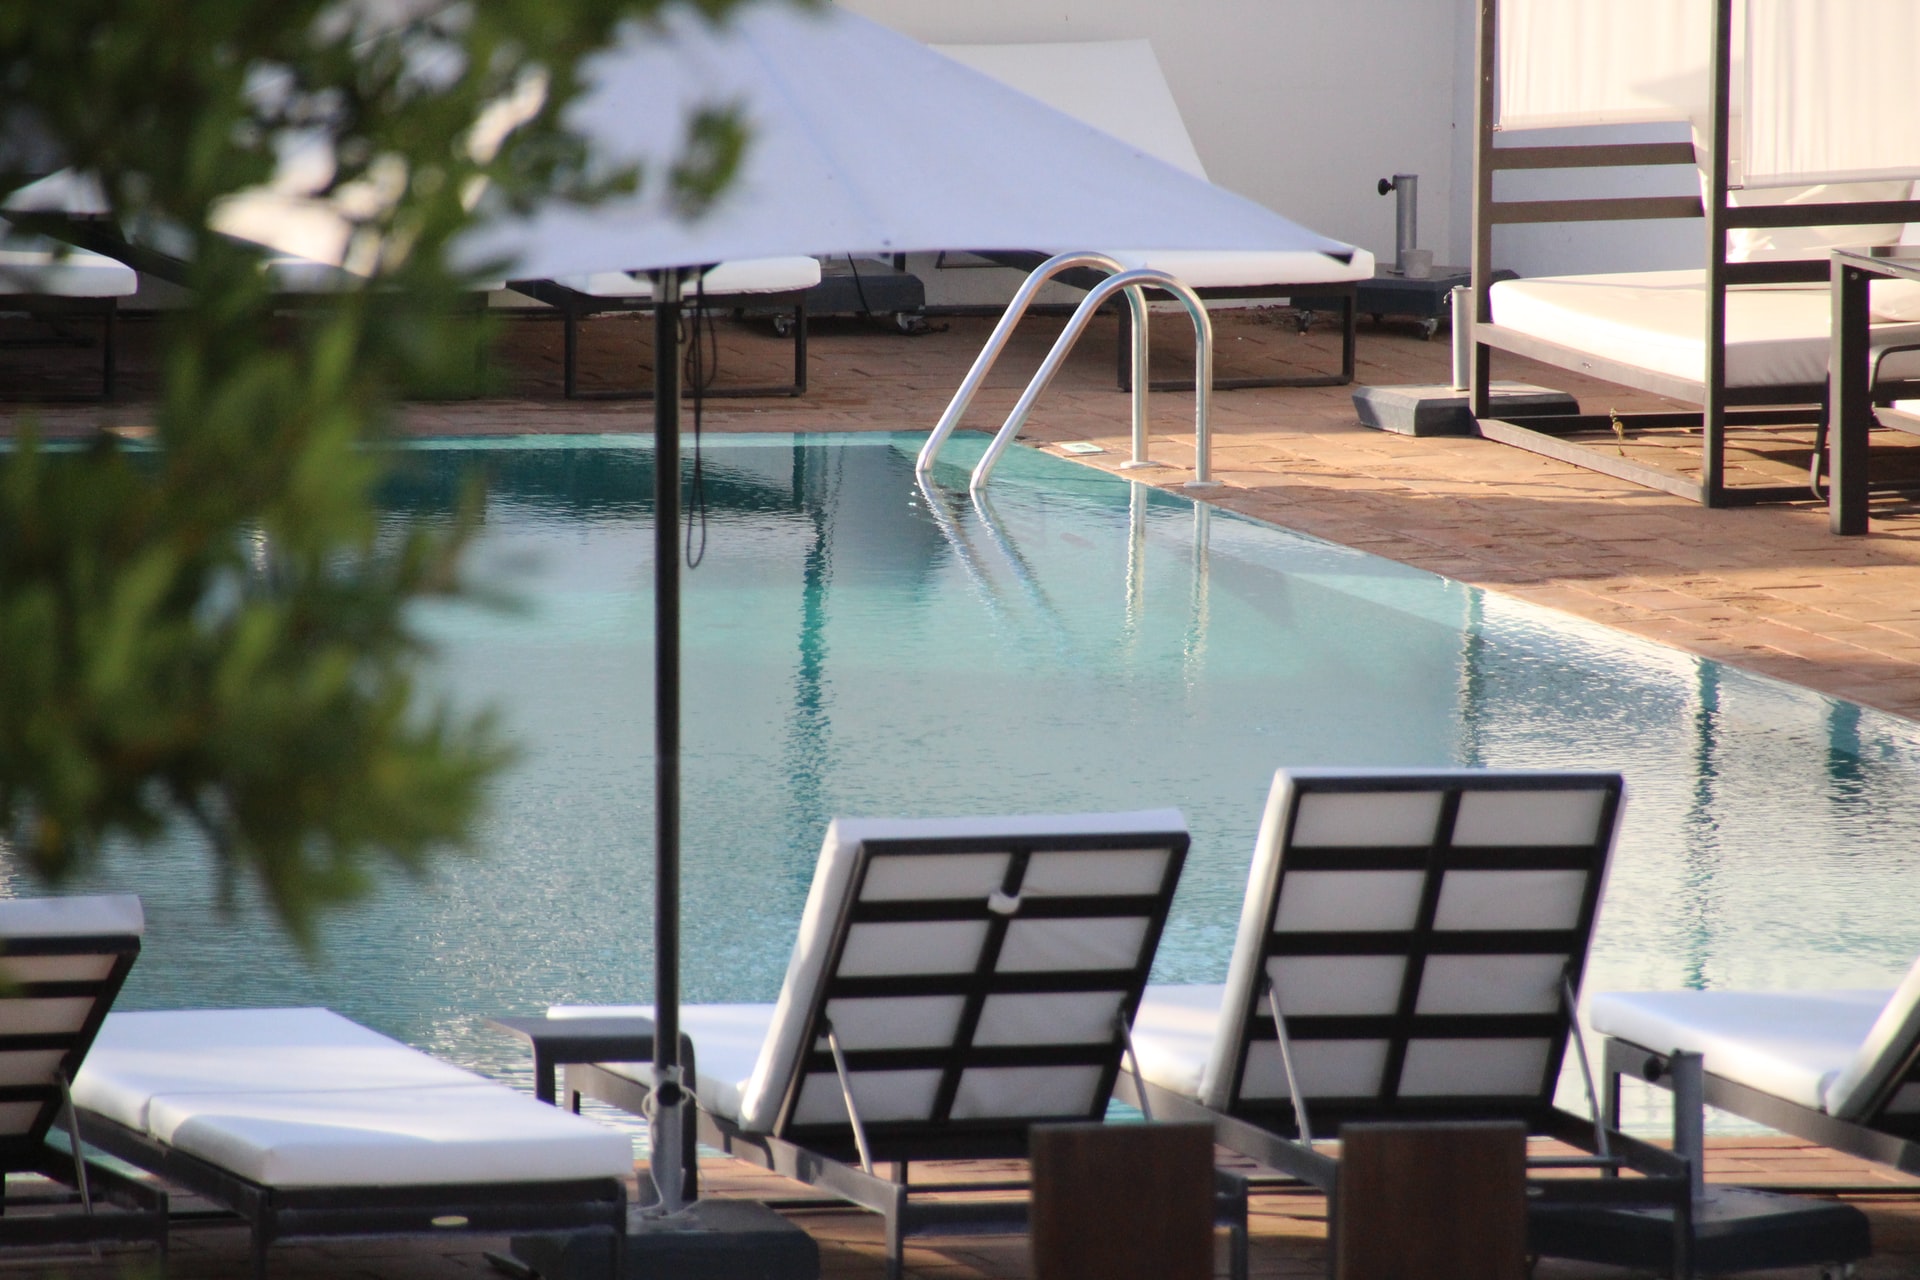 Νέες επενδύσεις σε ξενοδοχεία σε όλη την Κρήτη – Πού θα γίνουν τα νέα 5άστερα